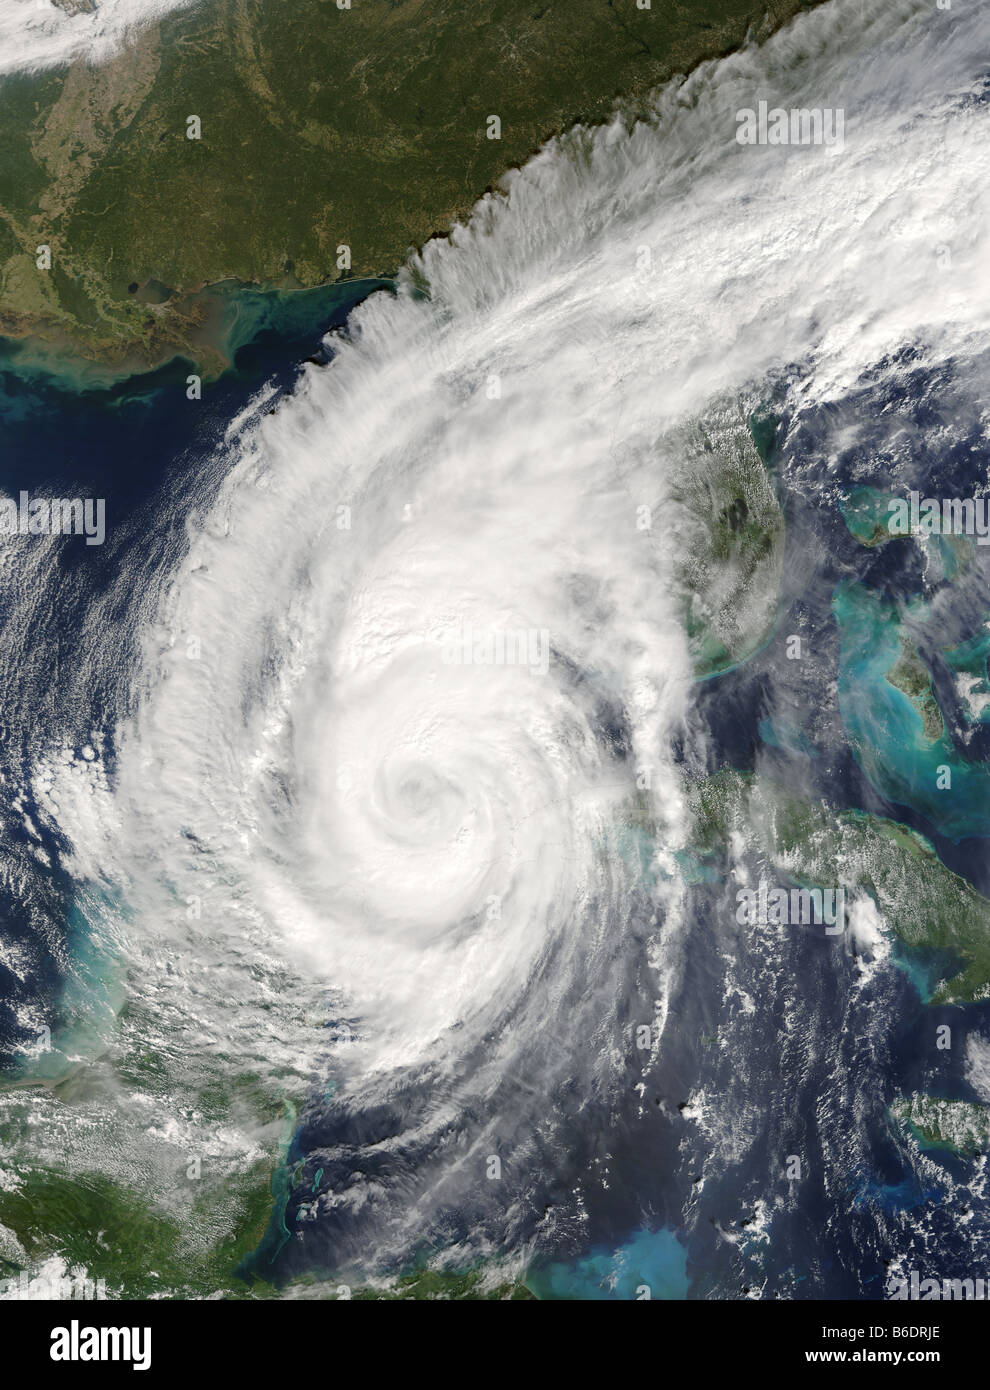 El huracán Wilma. Terra imagen de satélite del huracán Wilma cuando se aproxima a Florida, EE.UU., el 23 de octubre de 2005. Foto de stock